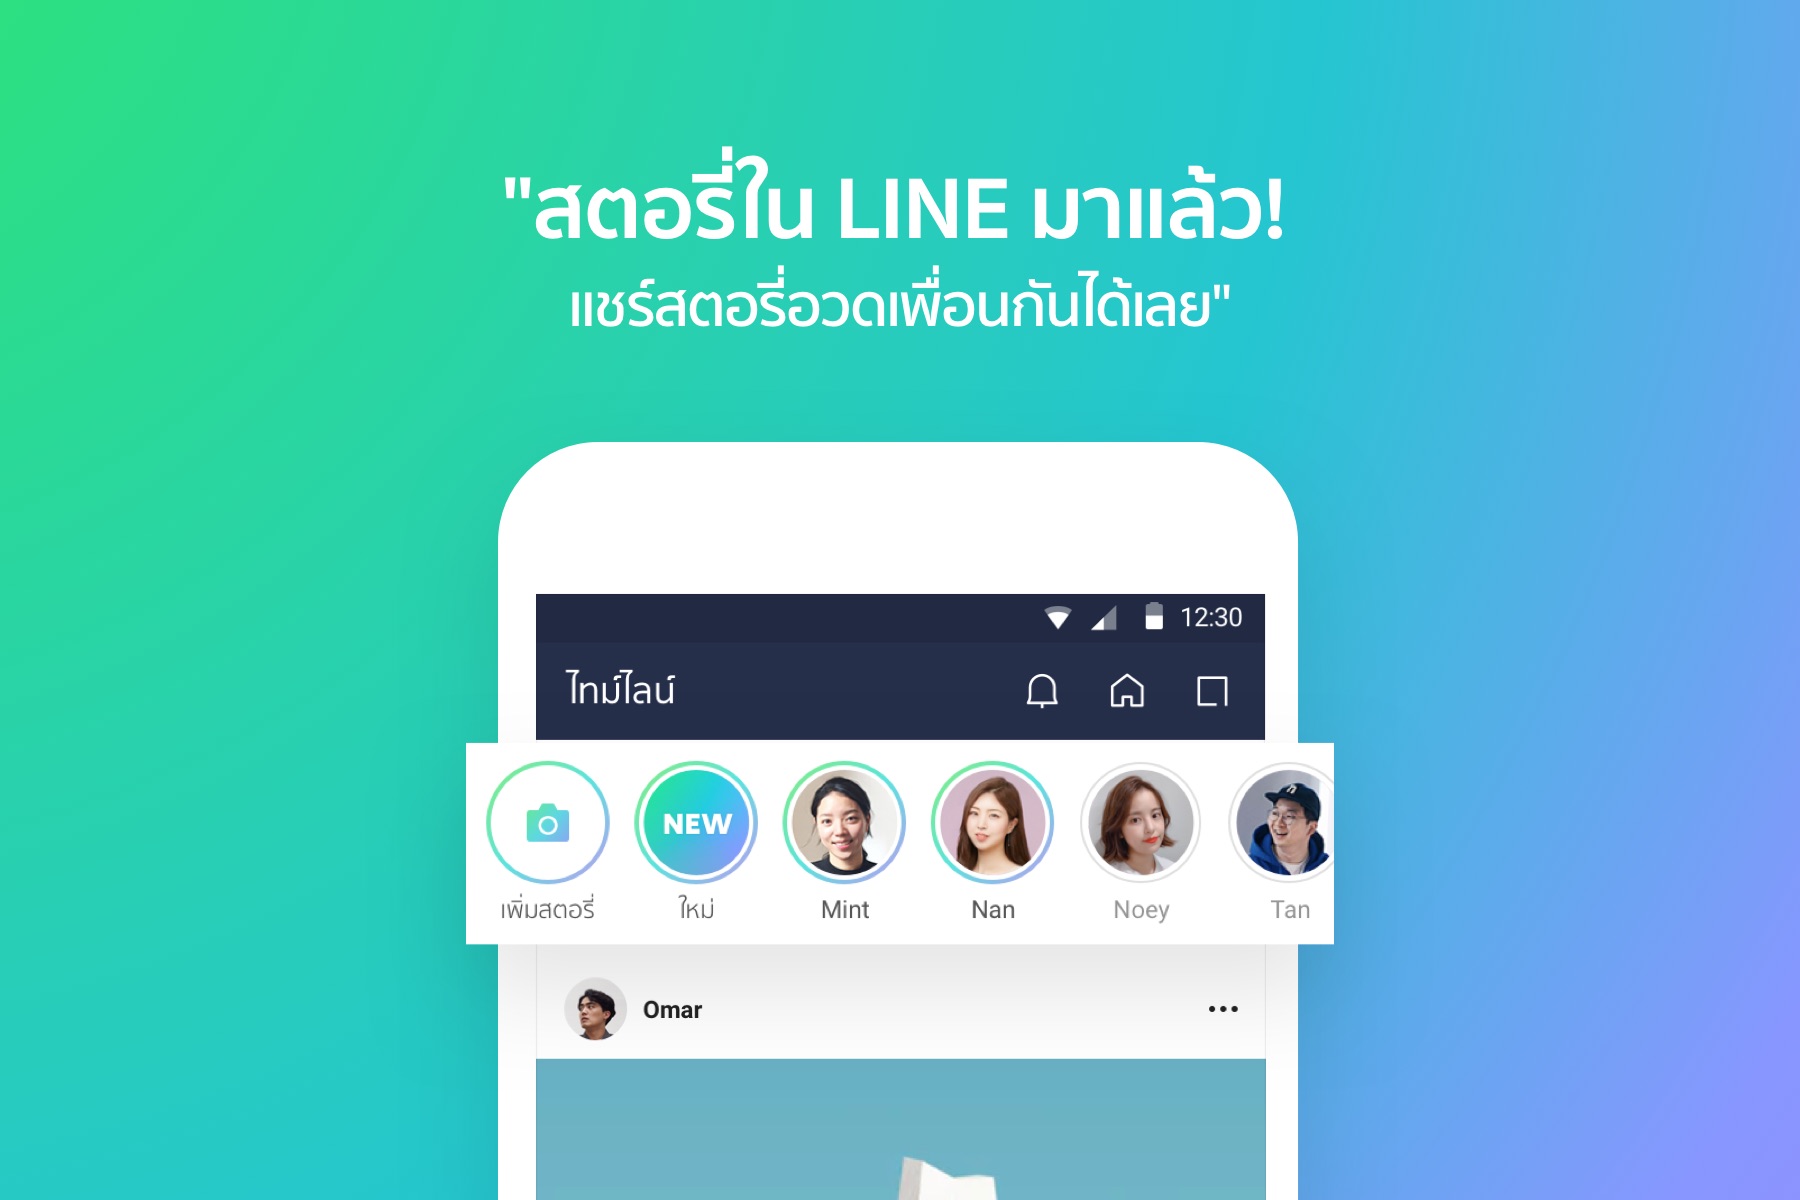 LINE ปลื้ม ยอดคนไทยใช้ไทม์ไลน์พุ่งติดอันดับ 1 ของโลก พื้นที่โซเชียลมาแรงแห่งใหม่ ม้ามืดครองใจคนไทยช่วงกักตัว!